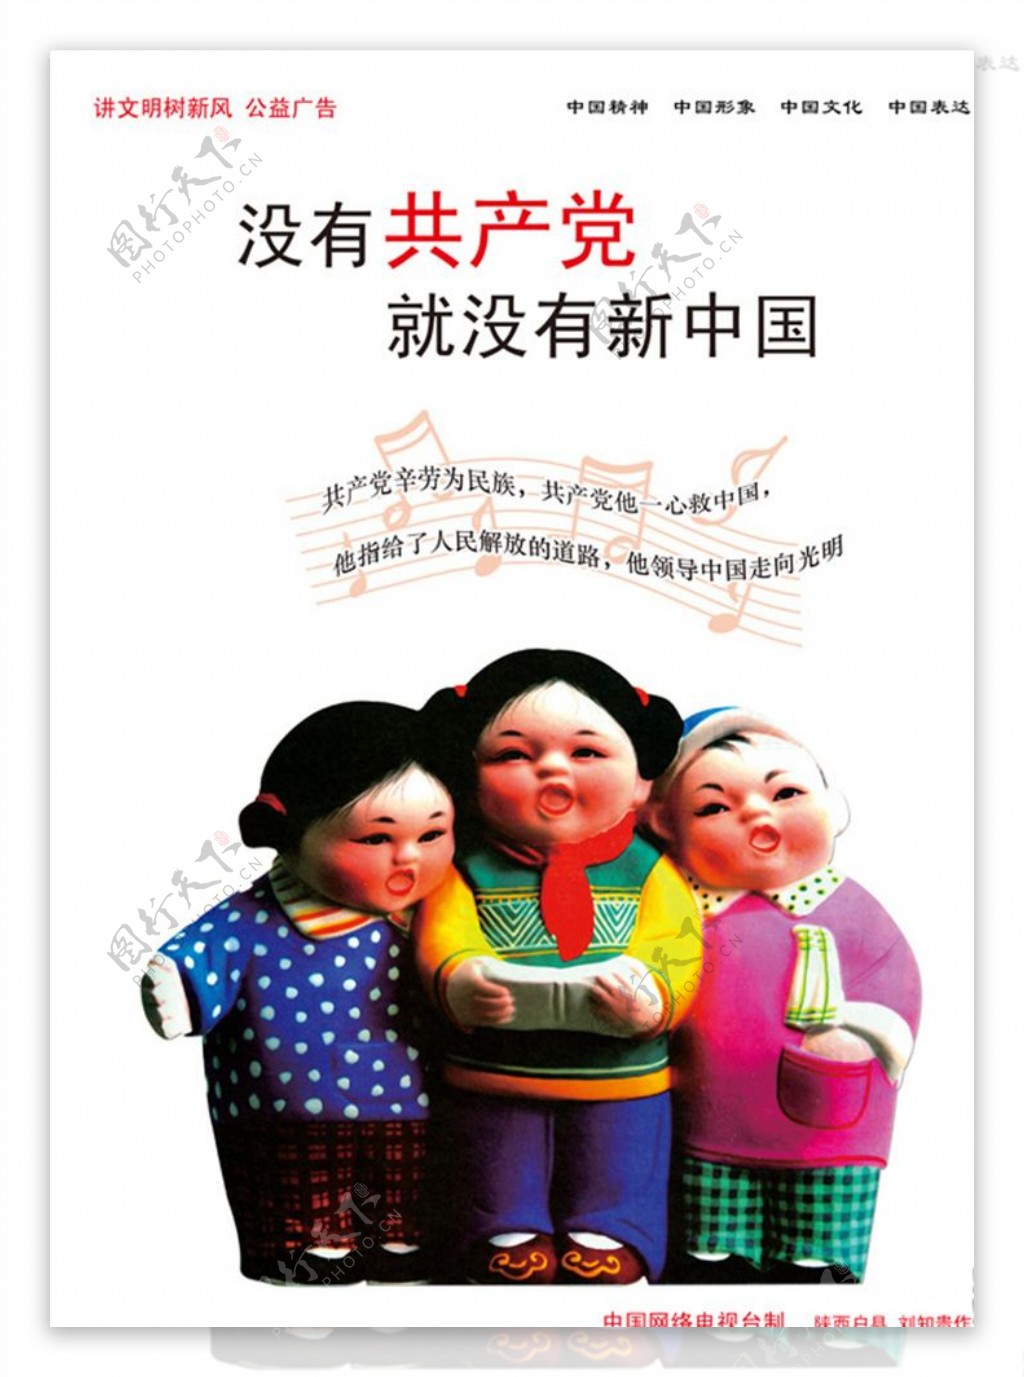 中国梦广告